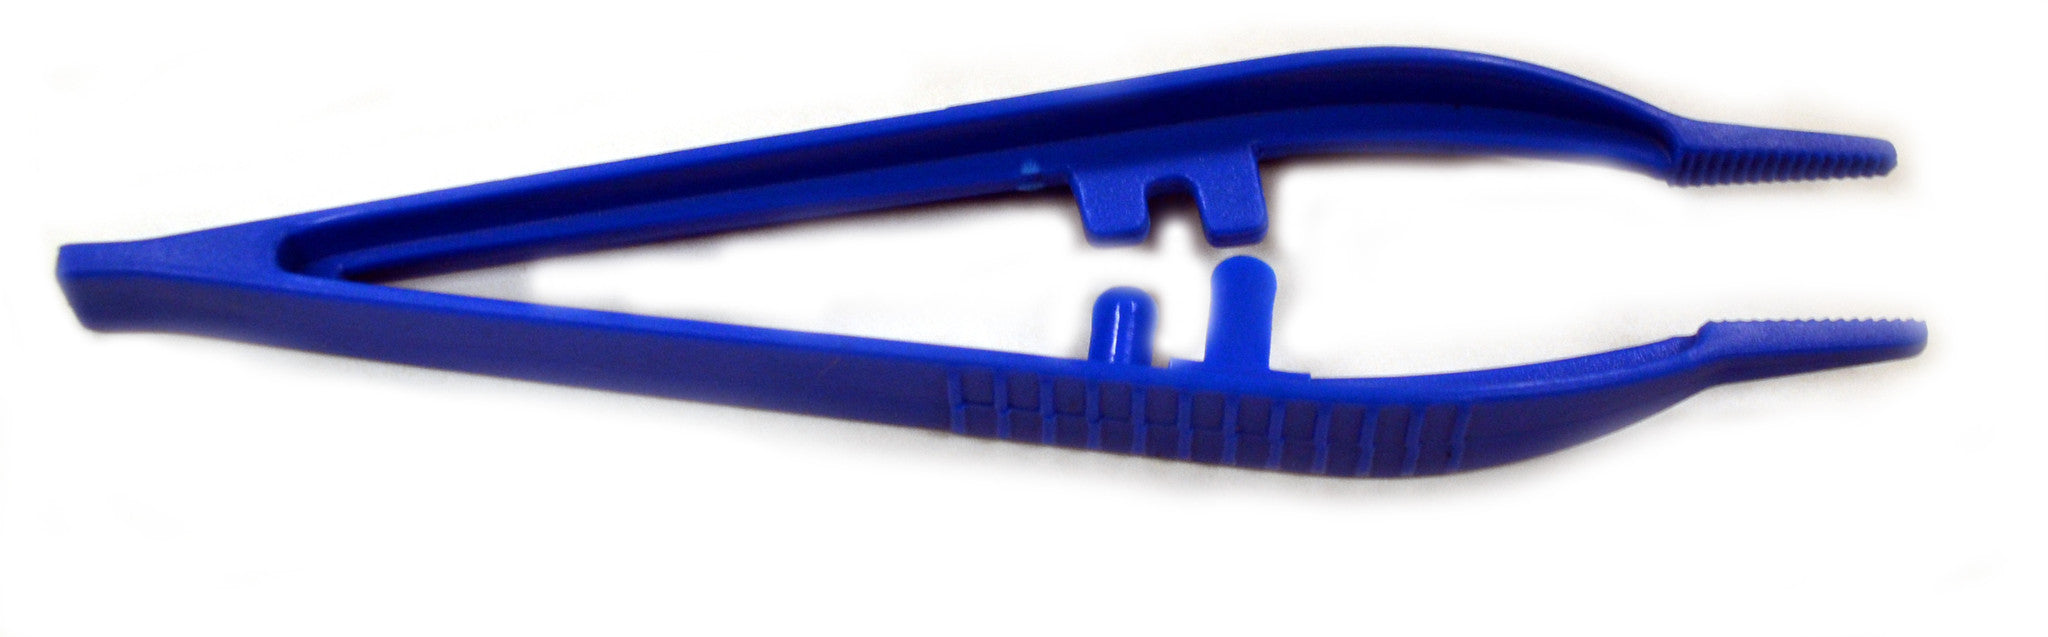 10PK Forceps/Tweezers, 5" - Disposable